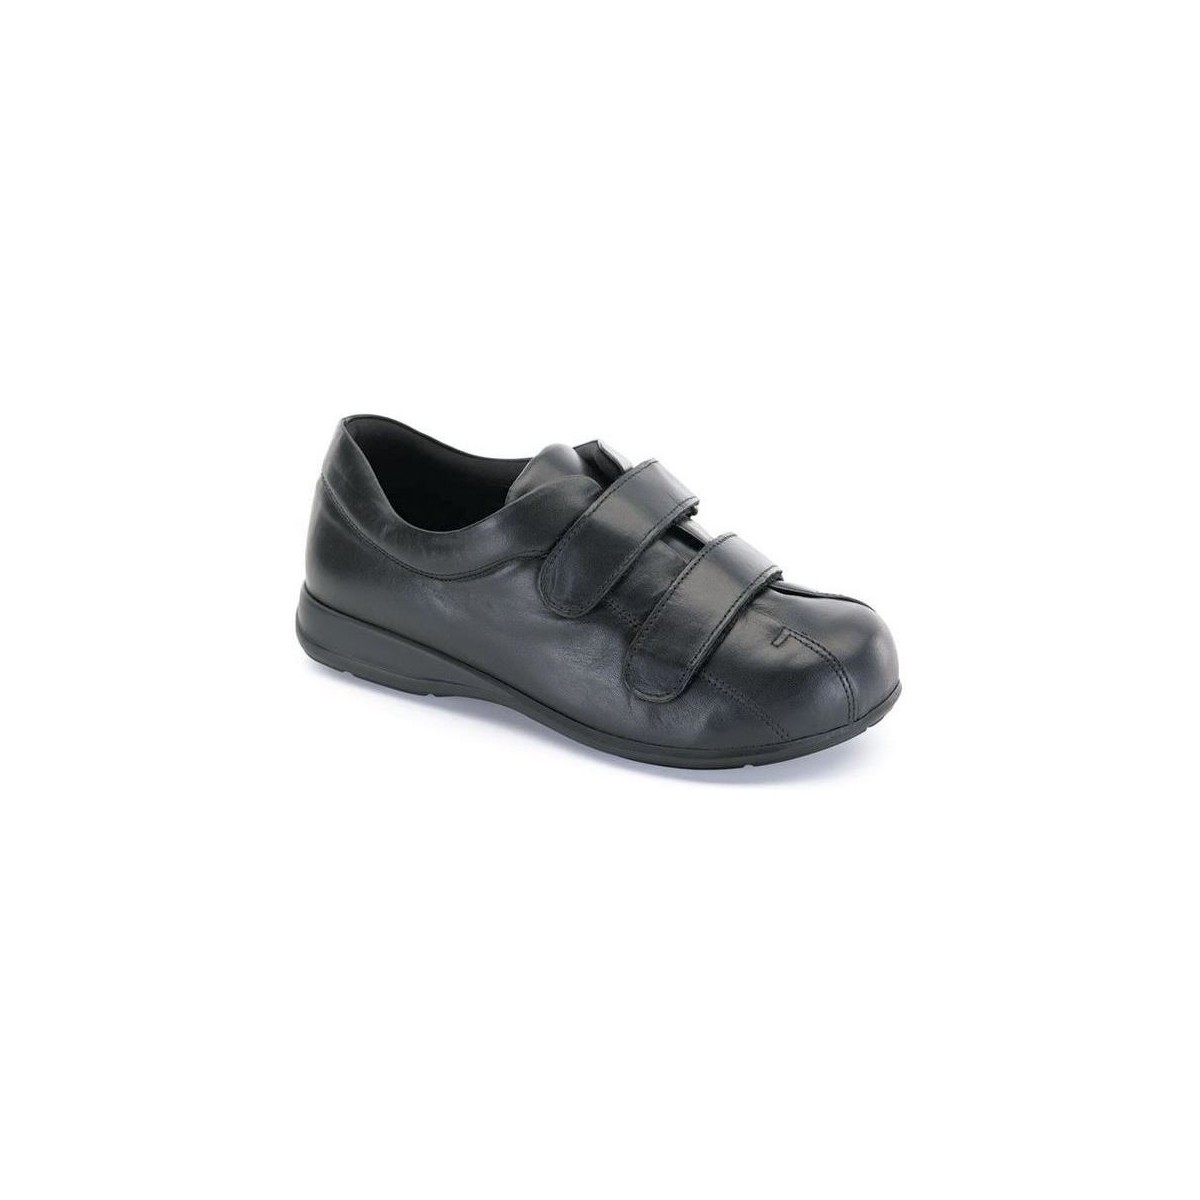 Chaussures Bottines / Boots Unisexe Velcro  pied diabétique Noir